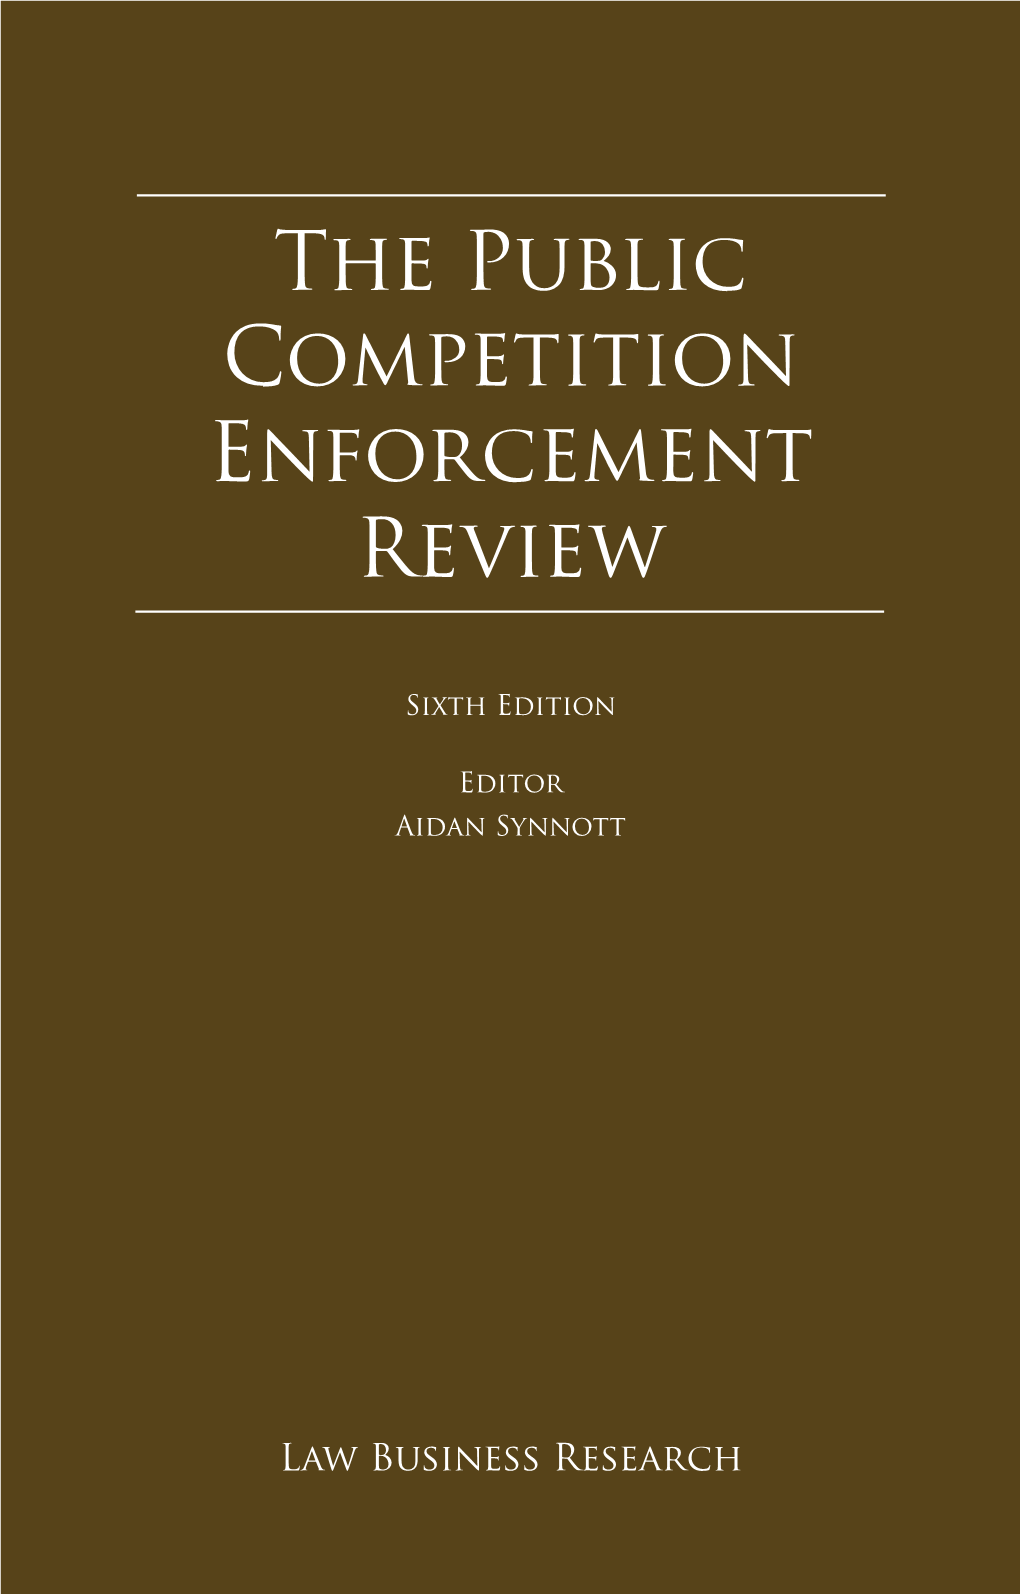 The Public Competition Enforcement Review